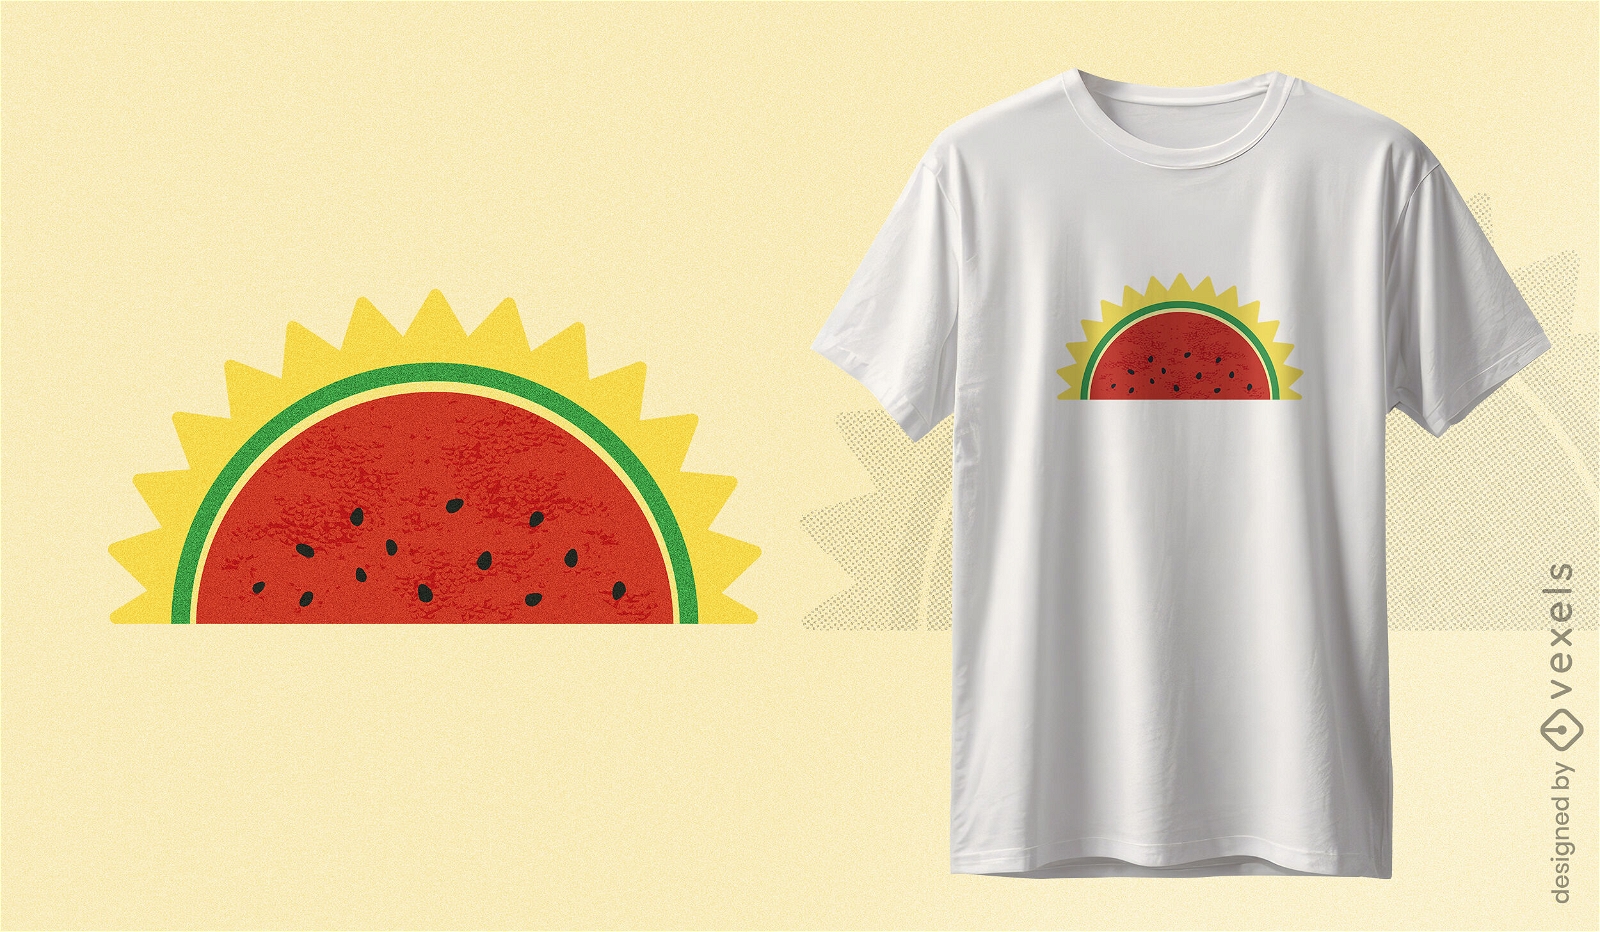 Watermelon sun t-shirt design